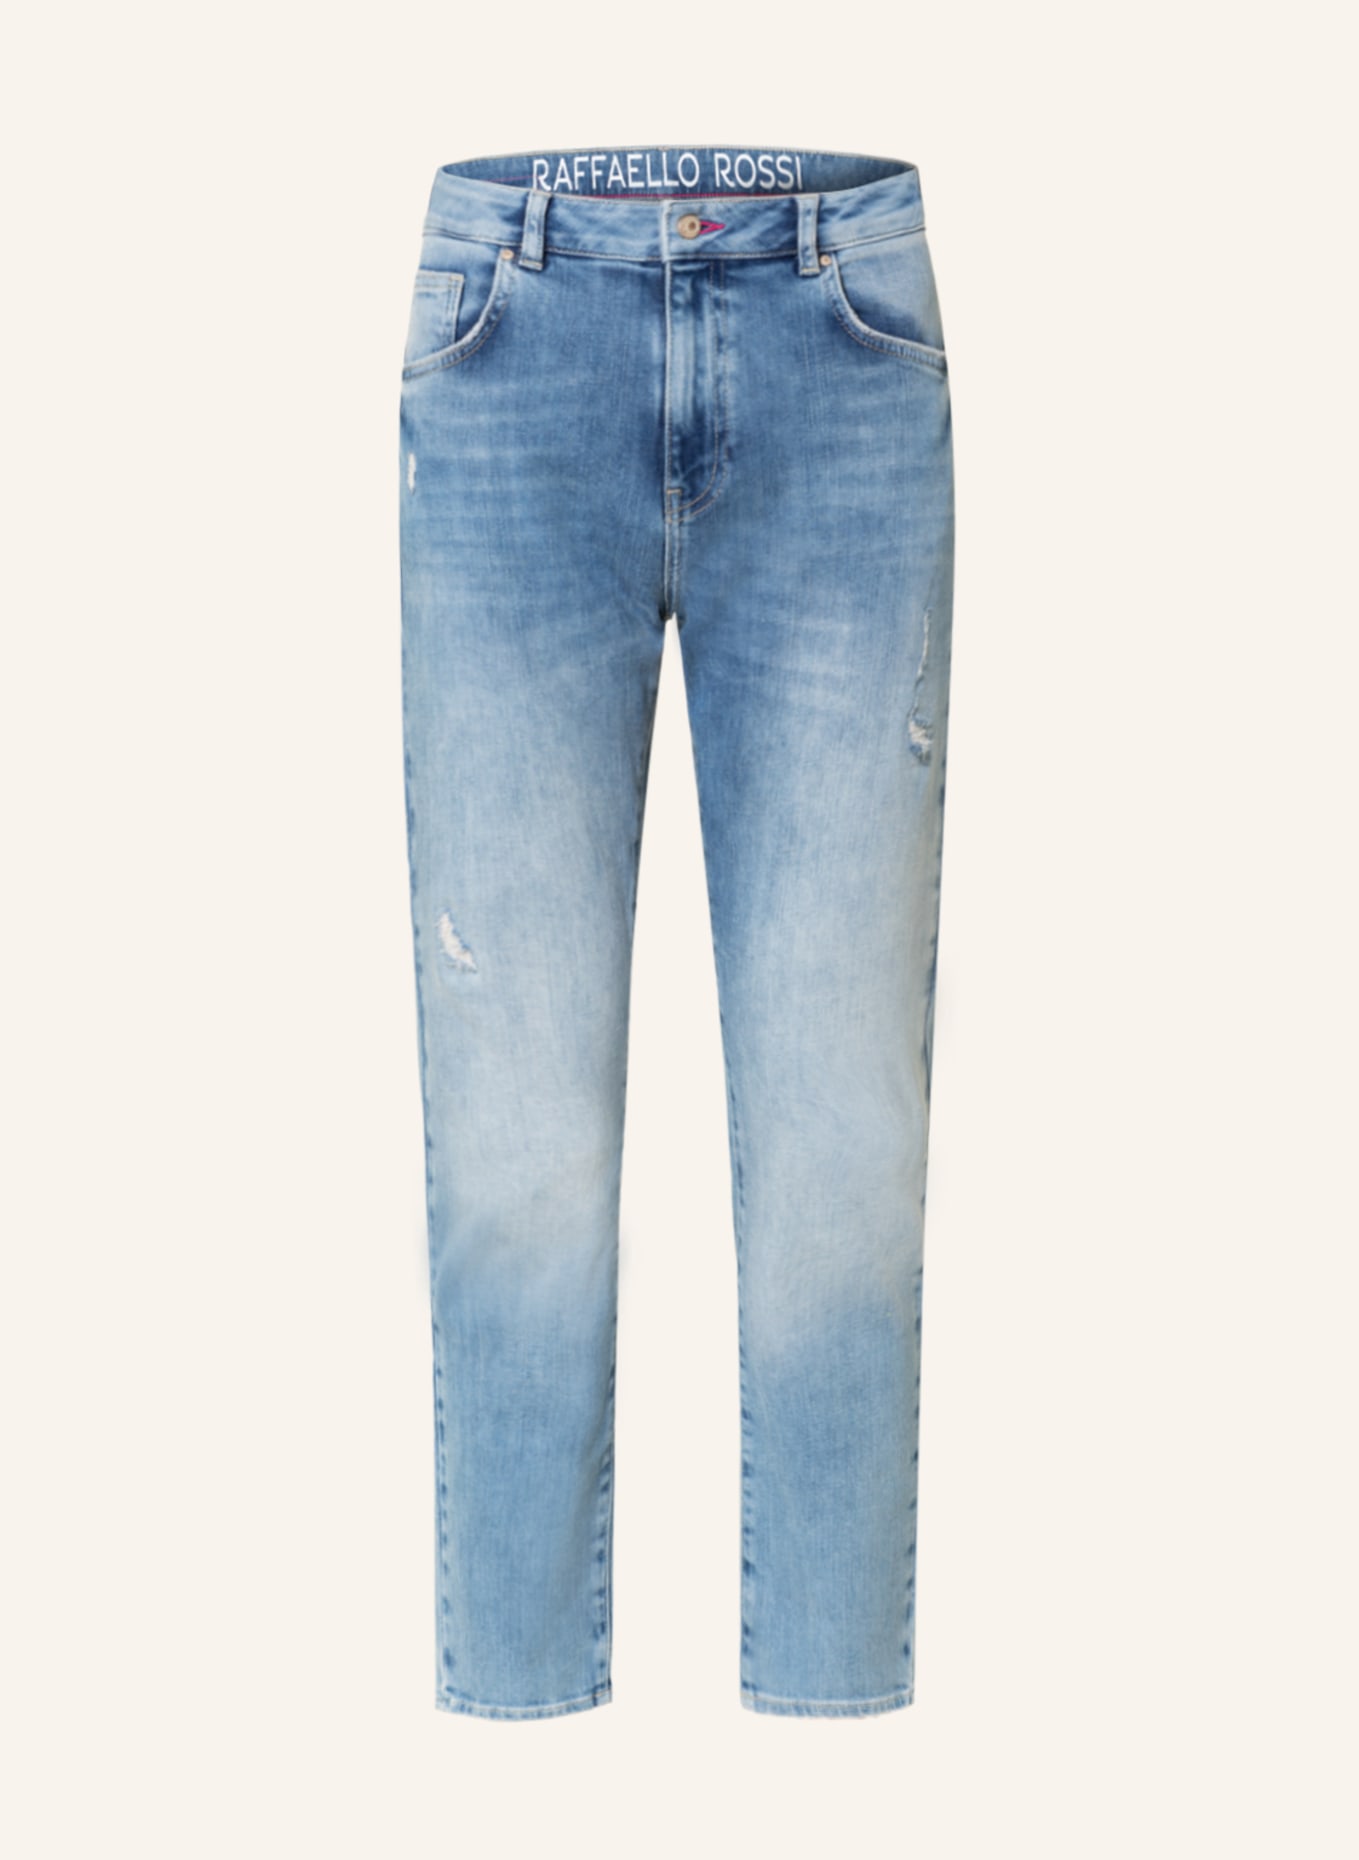 RAFFAELLO ROSSI Jeans DARCY, Farbe: 827 G-marine (Bild 1)